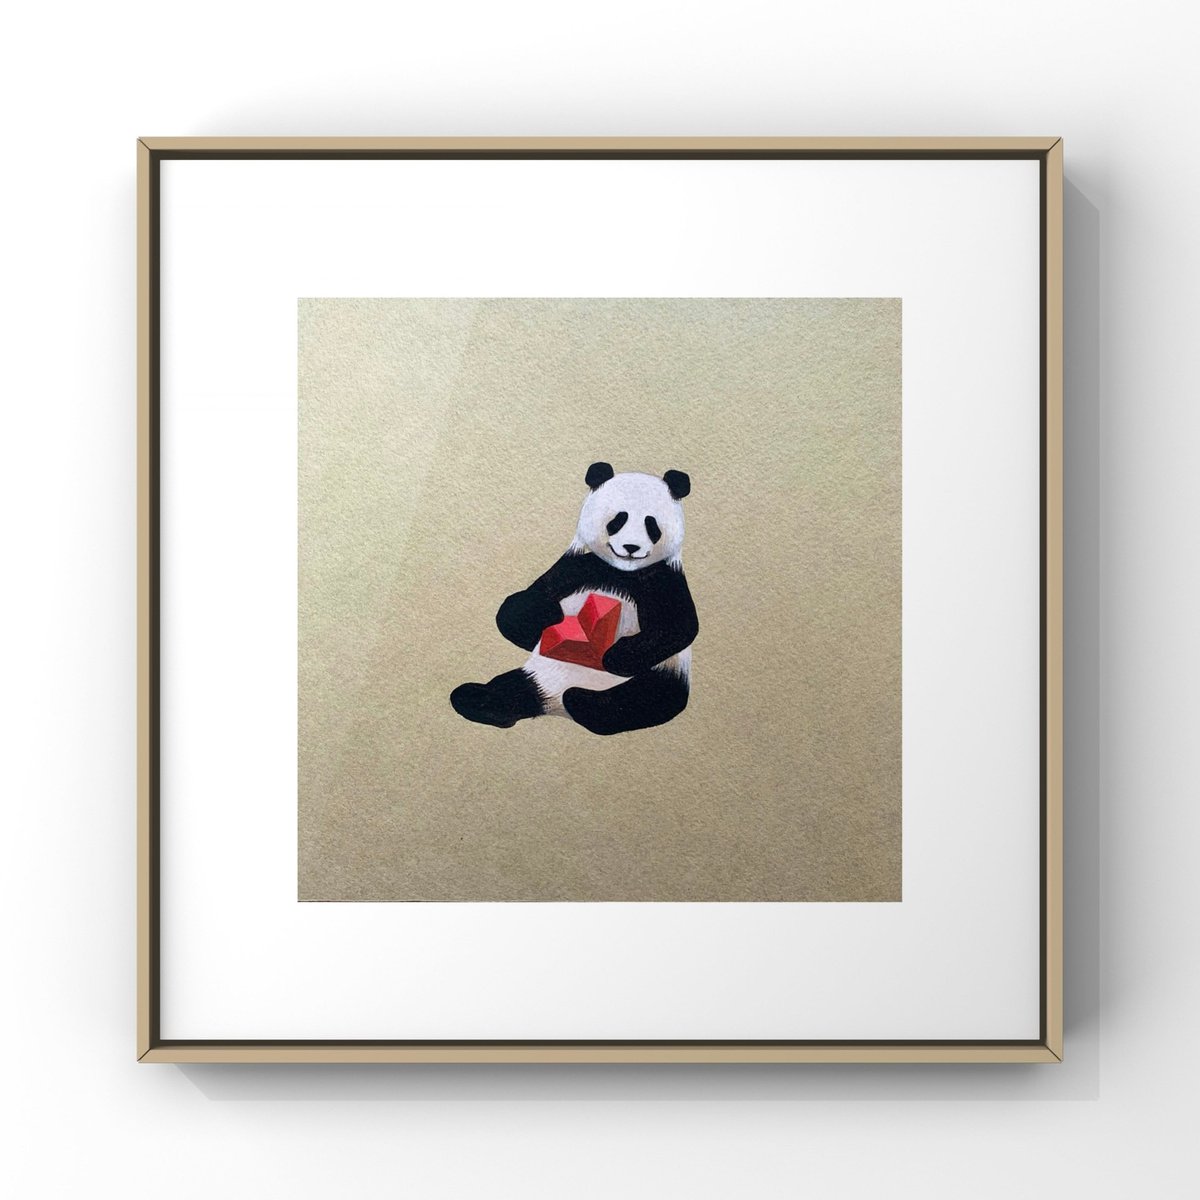  - Flirty panda - � by Alina Marsovna